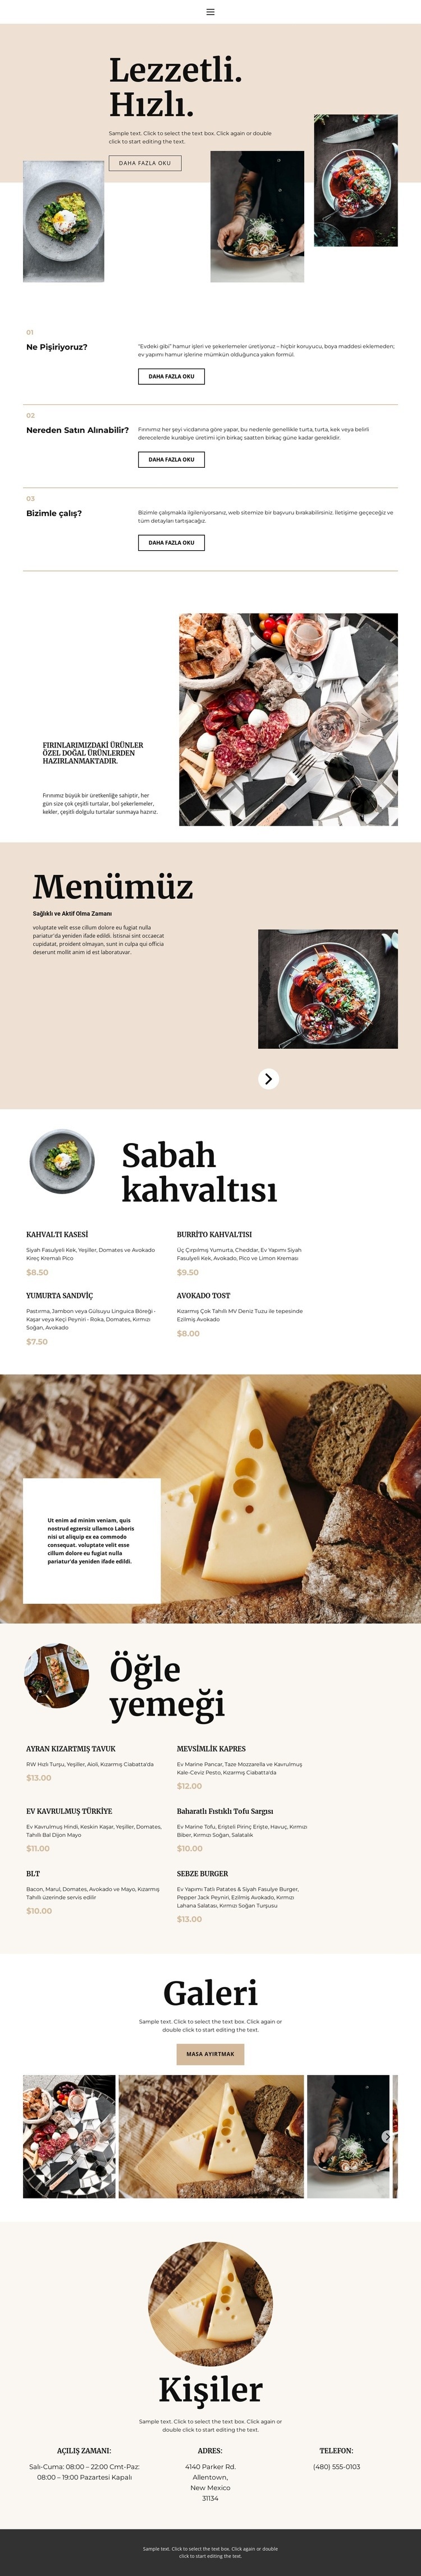 Yeni restoran Web sitesi tasarımı